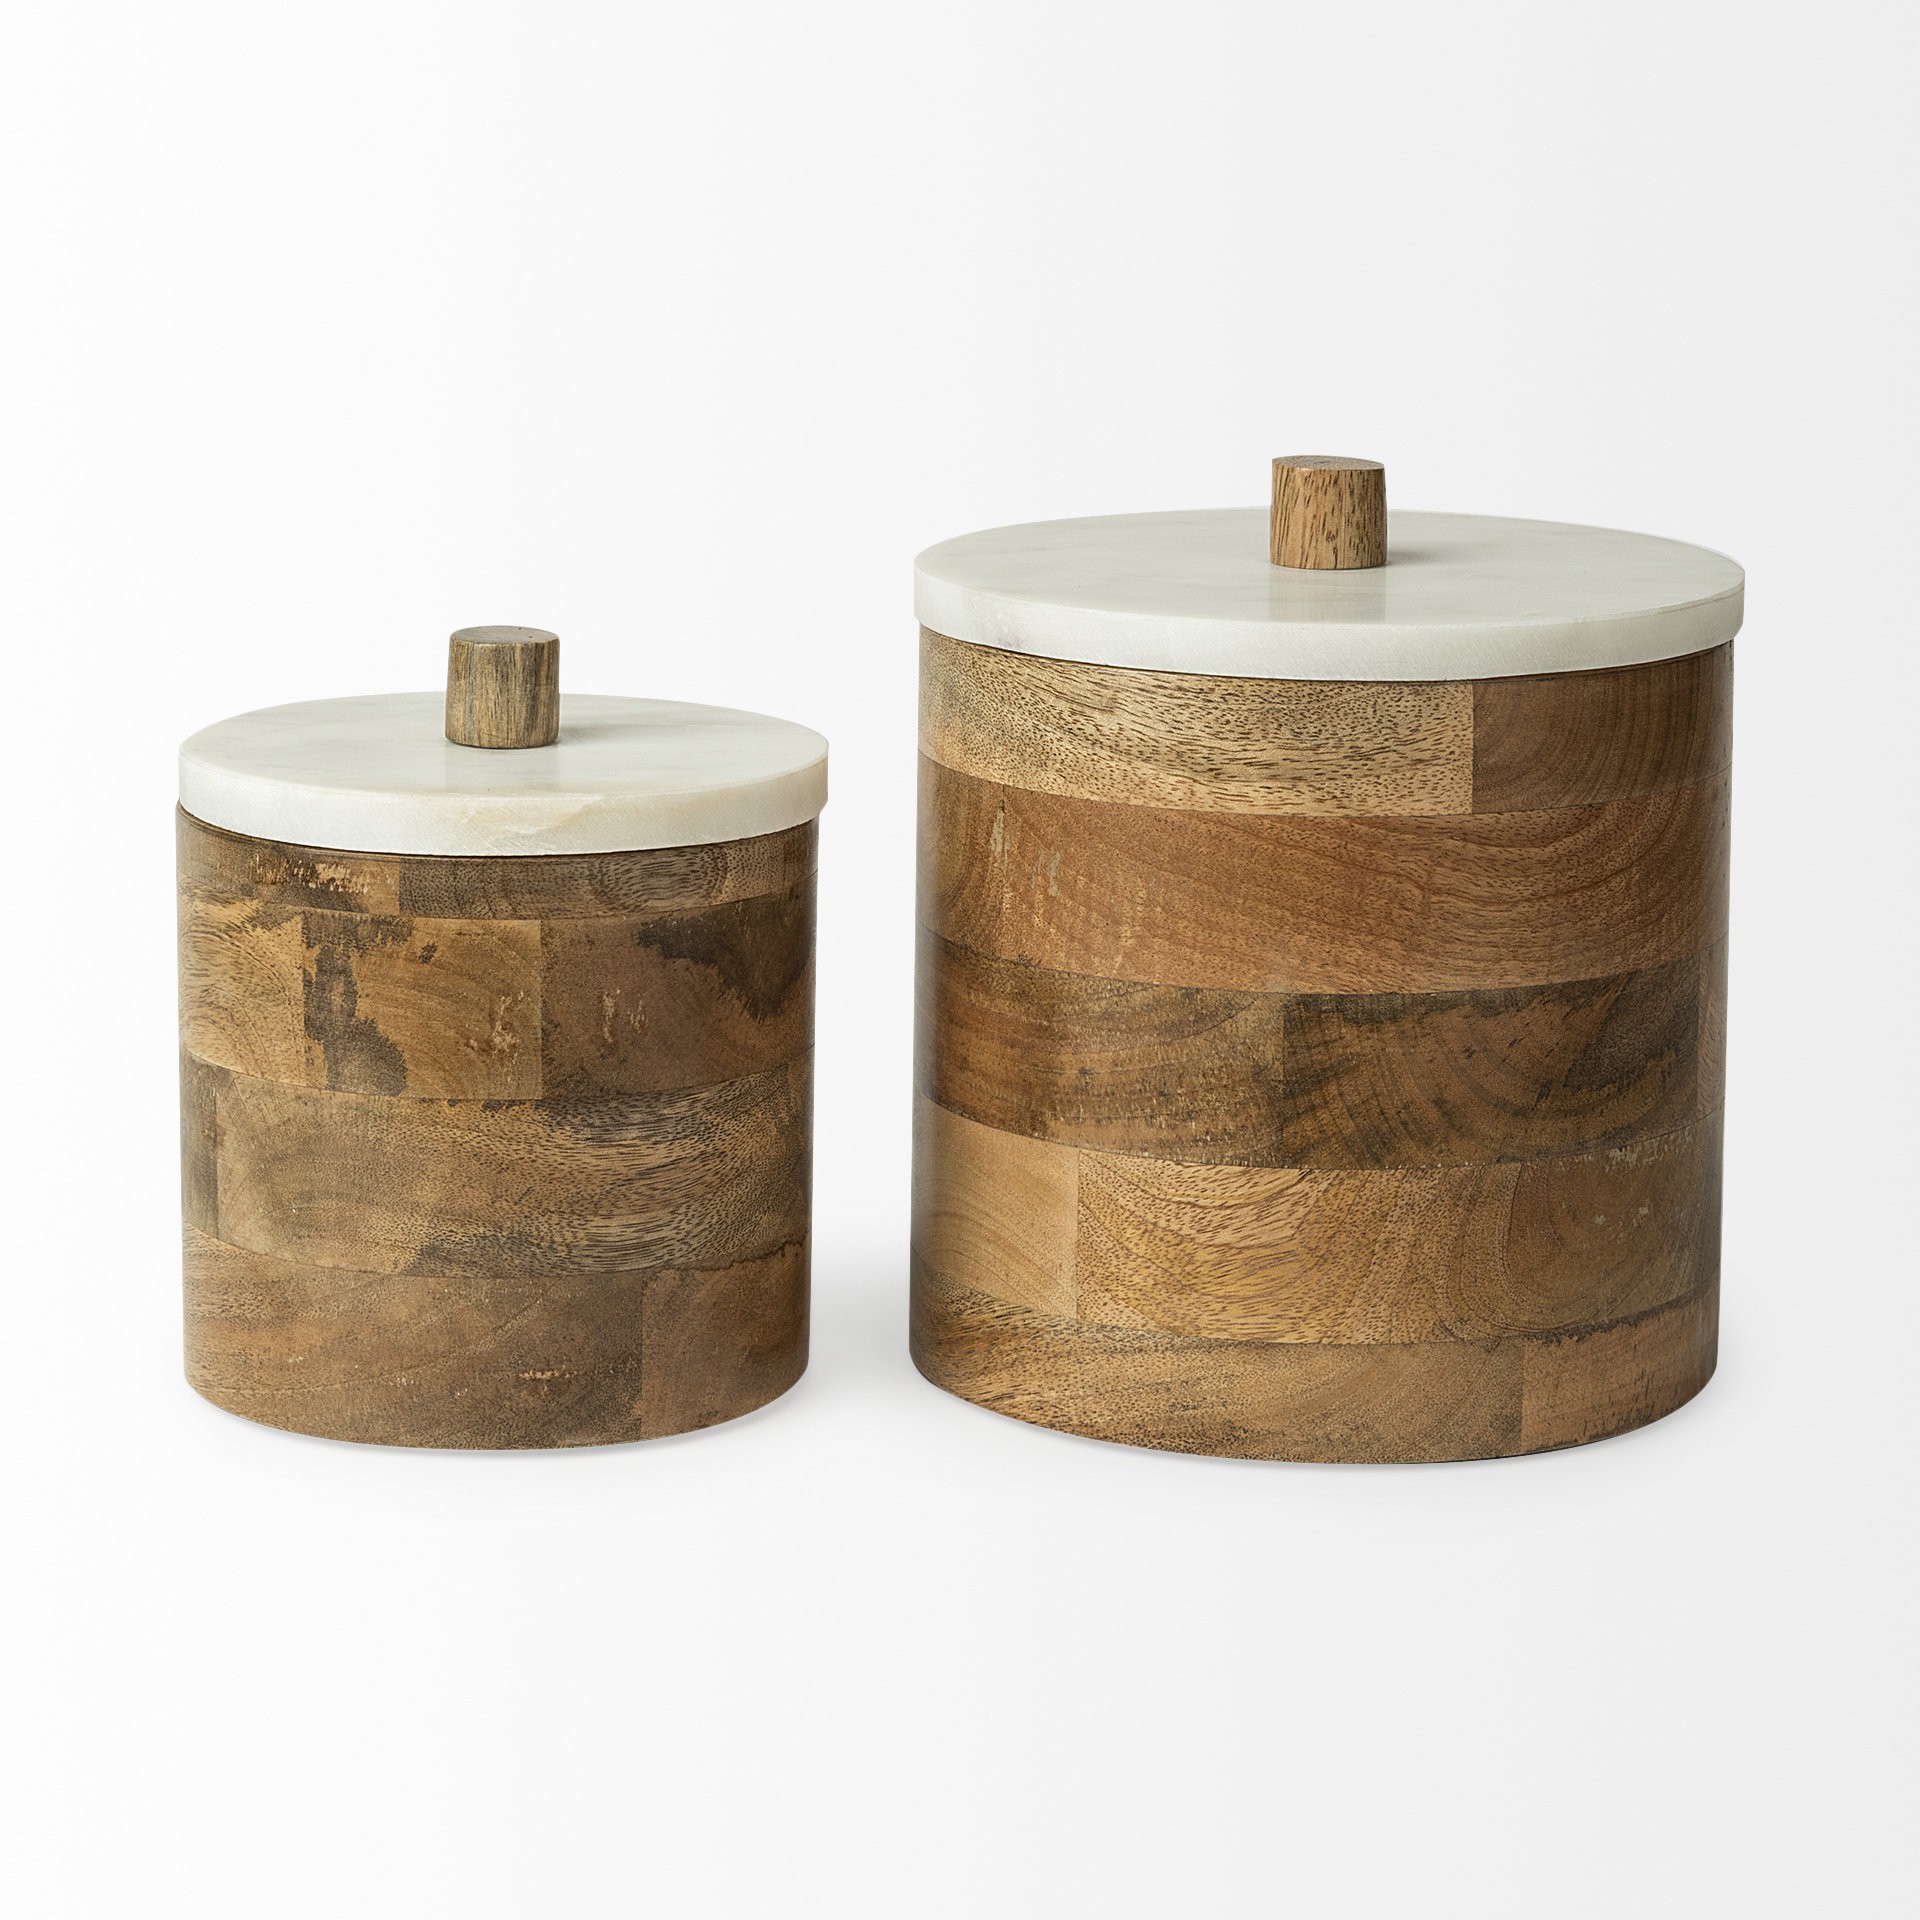 Petite Brown Wooden Round Storage Box